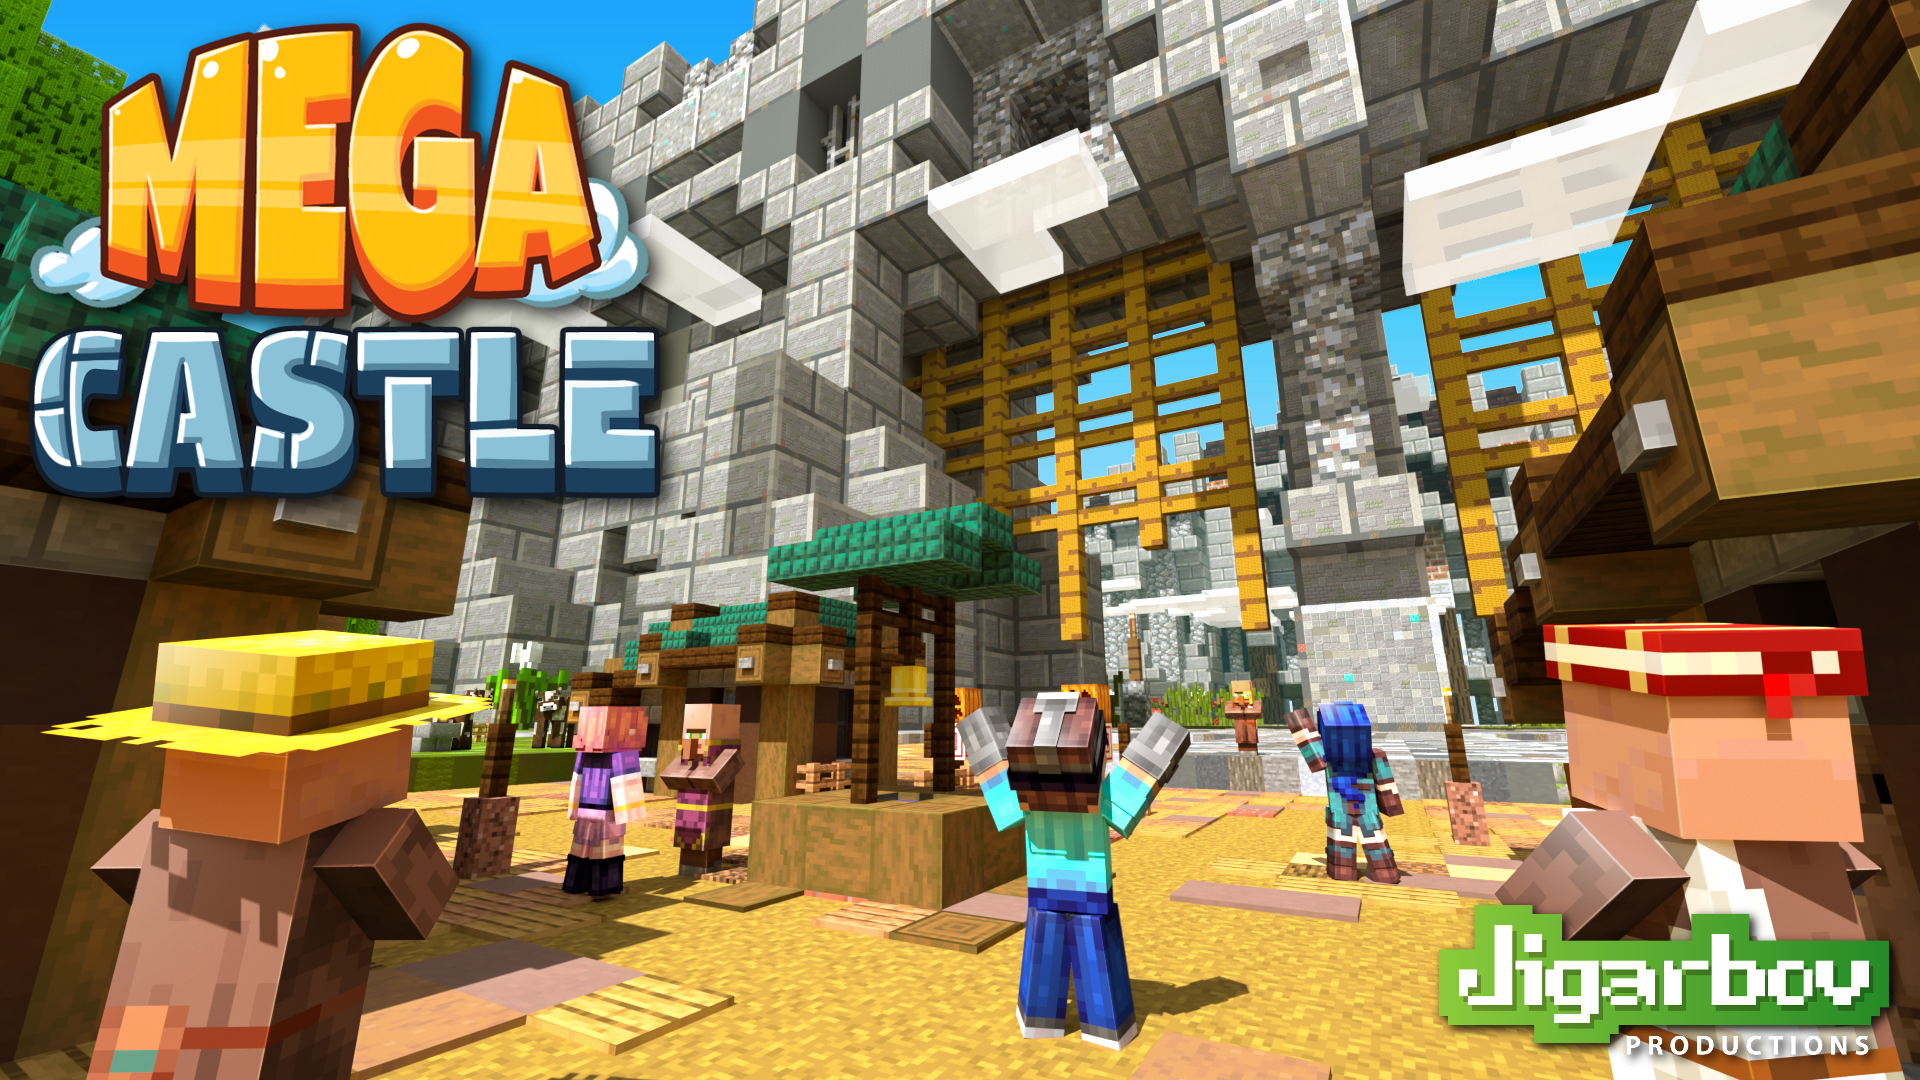 Bendecir dirección pulgar MEGA Castle – Minecraft Marketplace Release – Jigarbov.net